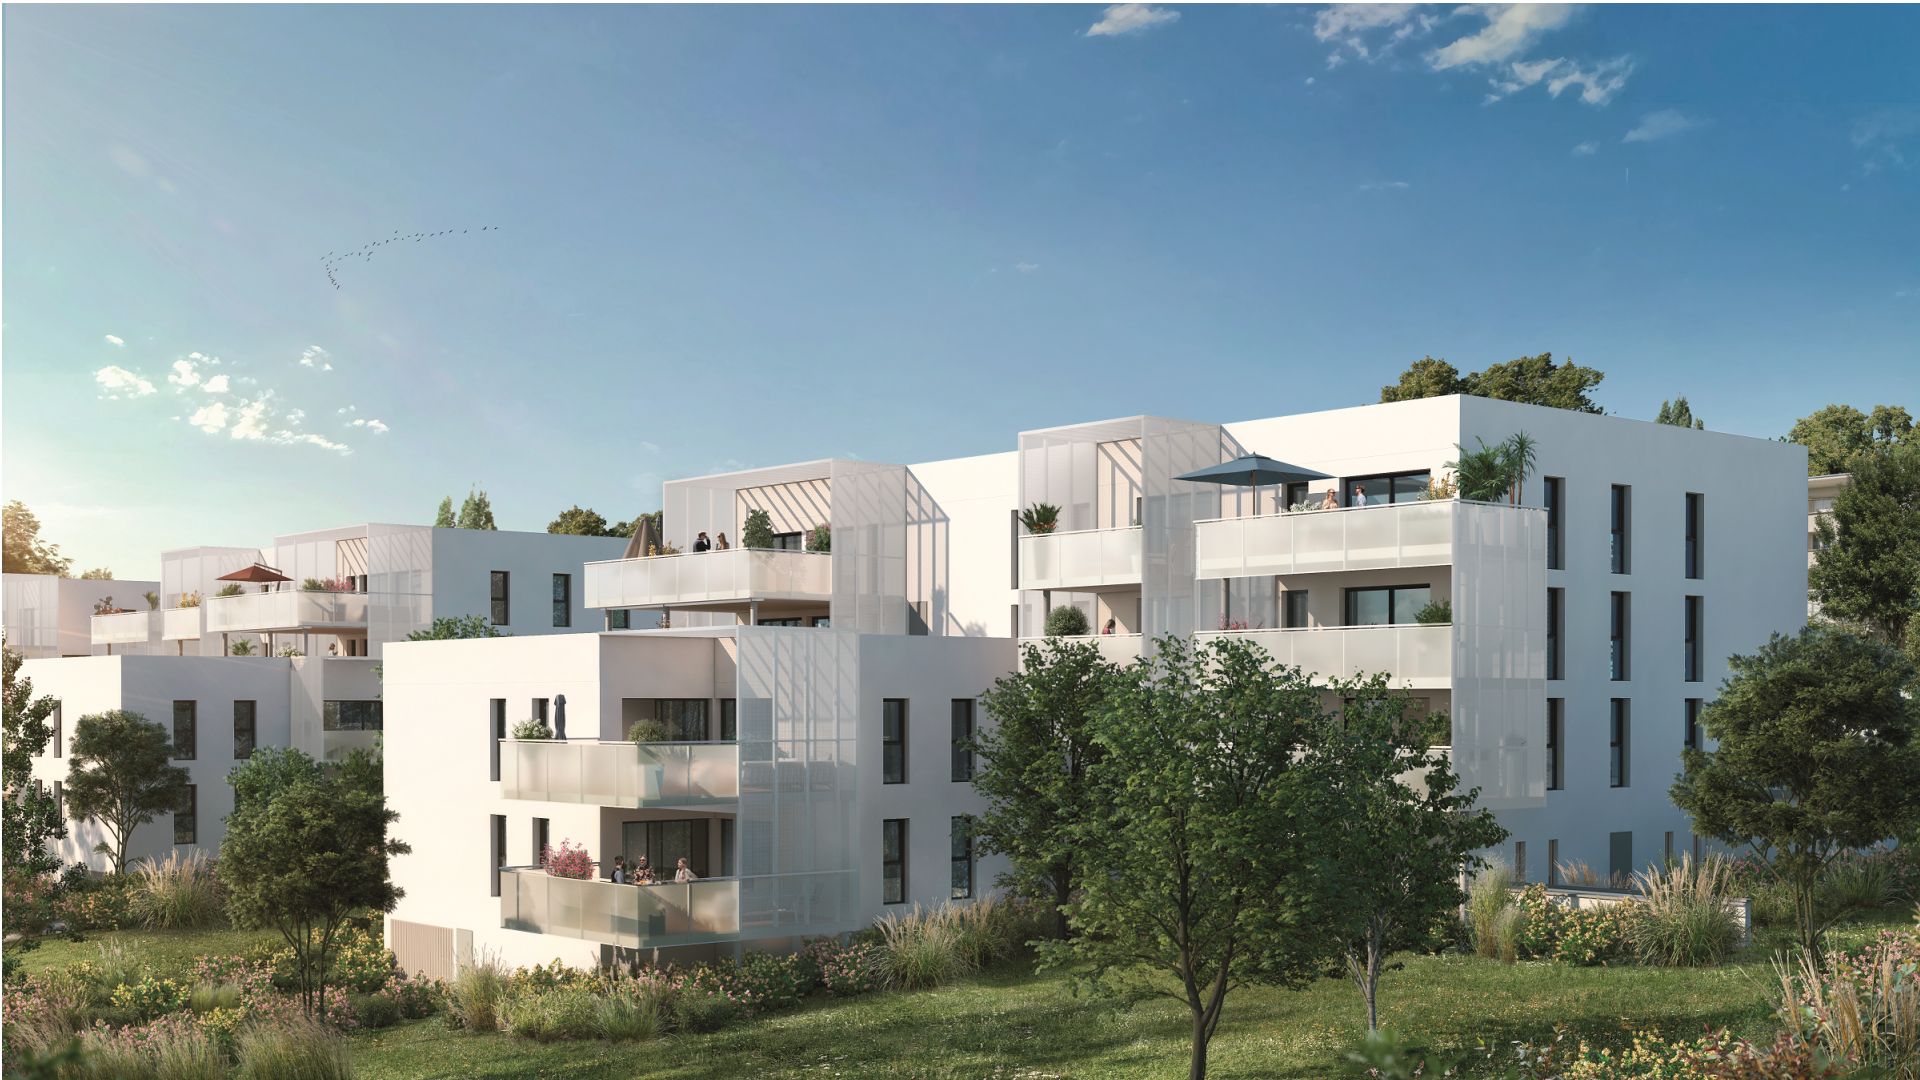 Greencity Immobilier - Résidence Le Solstice  - achat appartements neufs du T2 au T5 - Ramonville Saint-Agne 31520